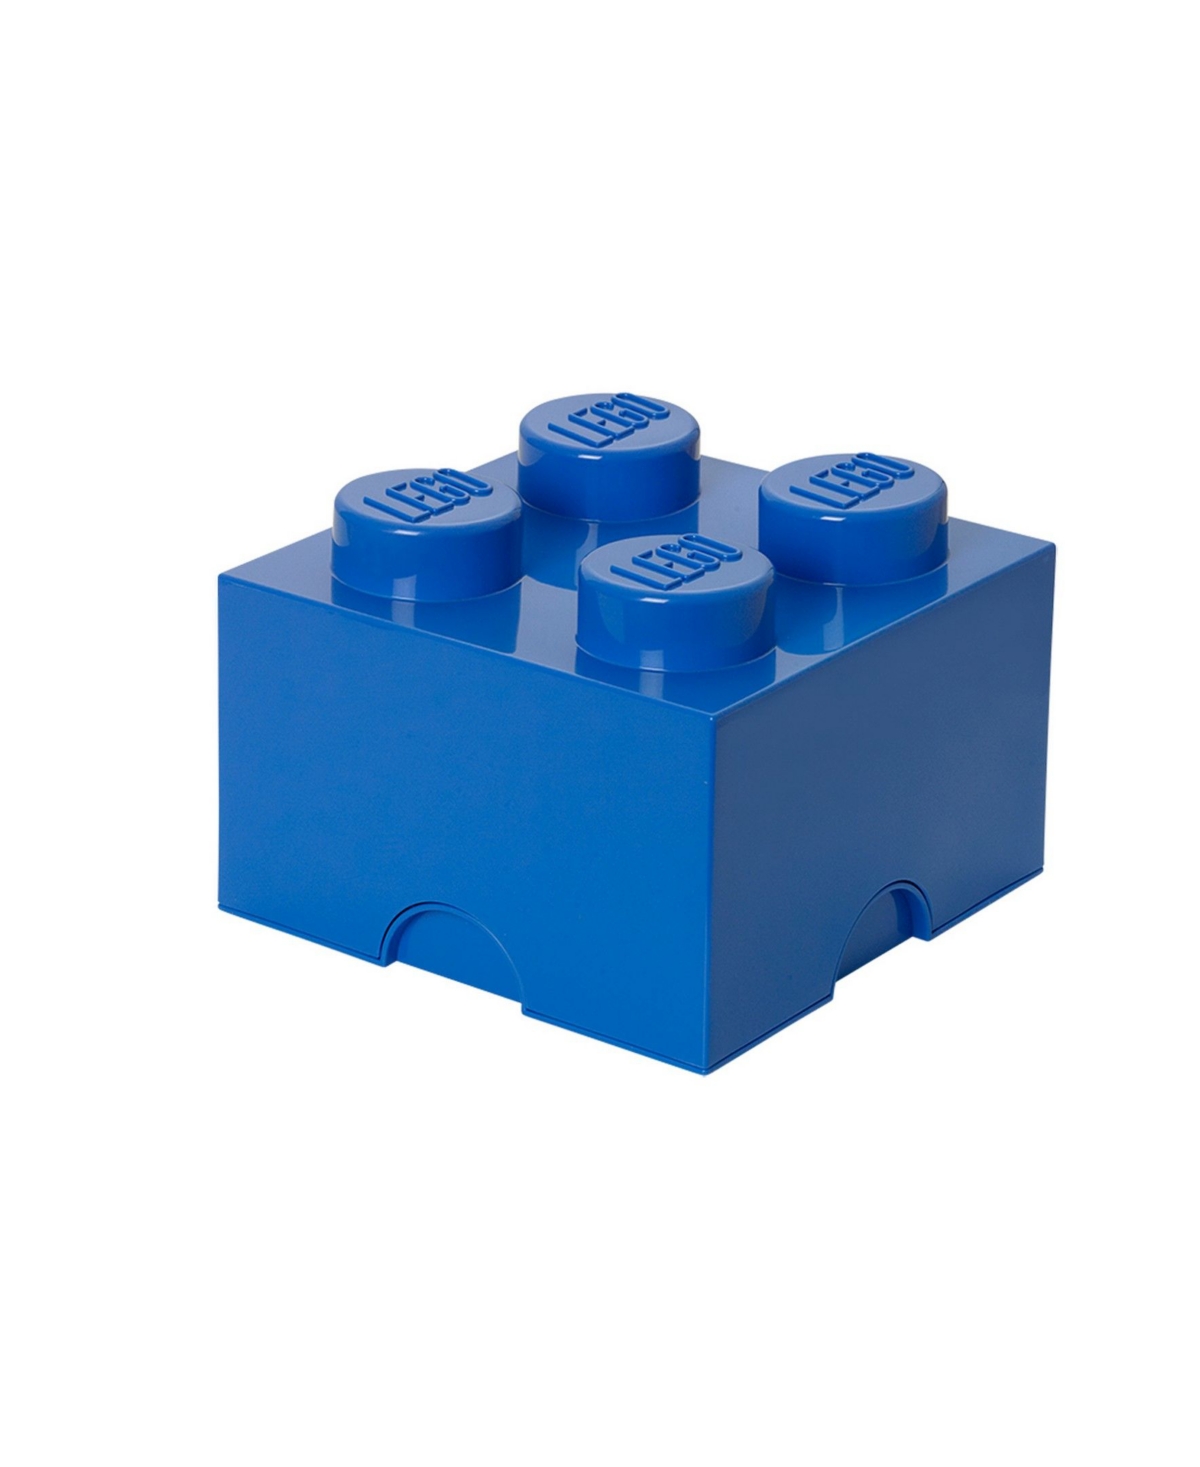 Lego Kids' Storage Brick With 4 Knobs In Dark Blue